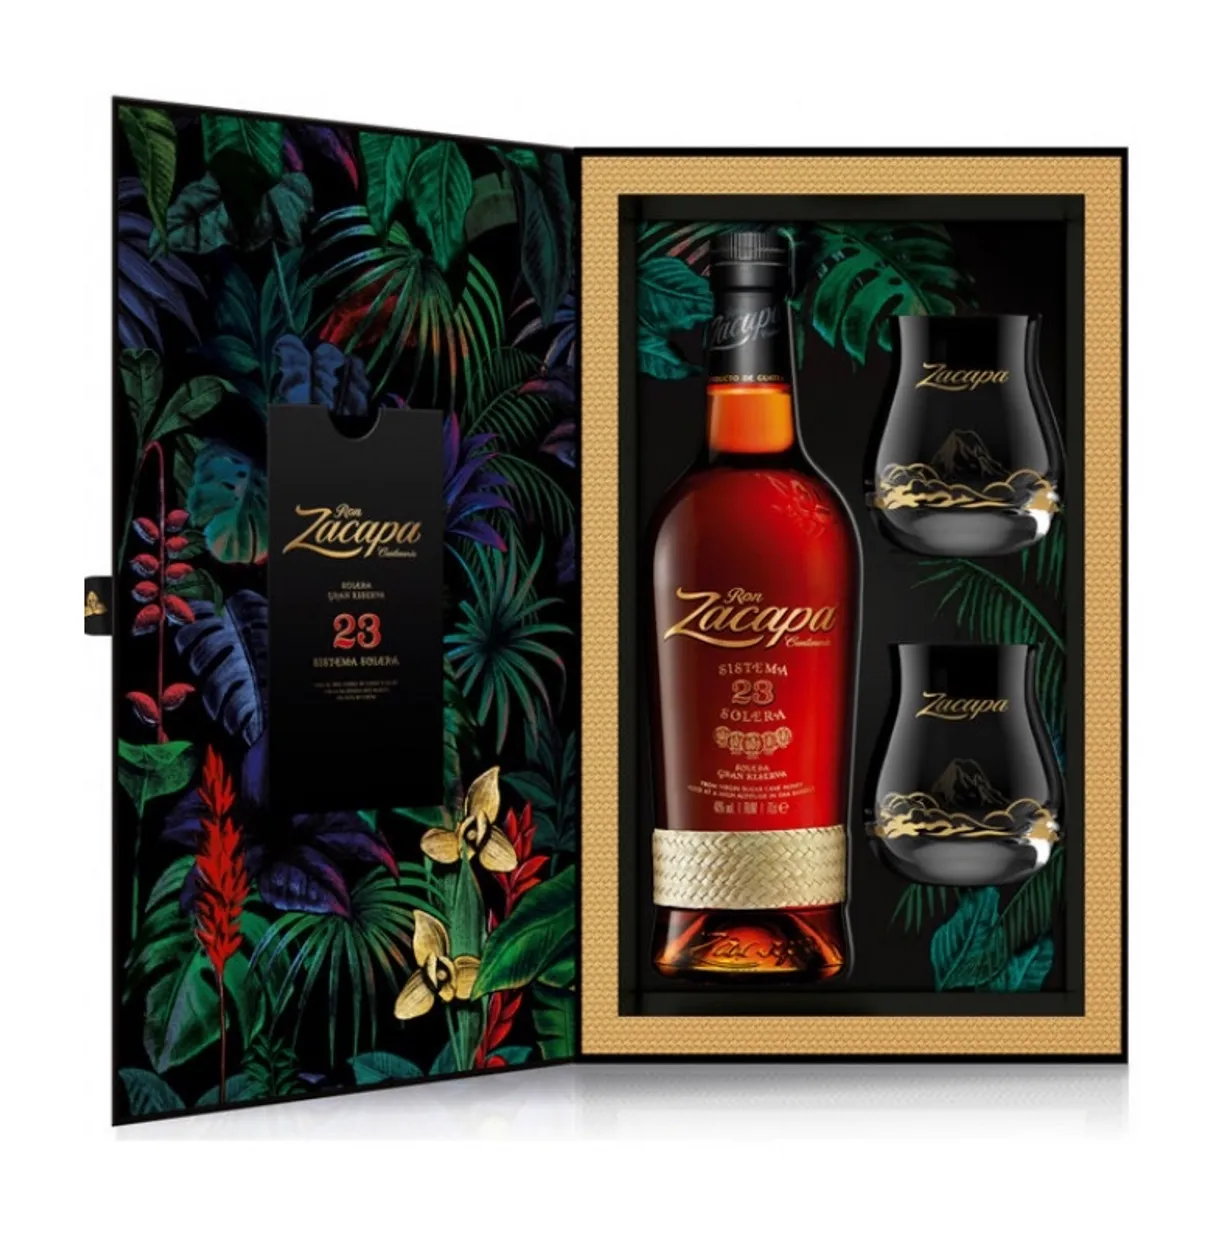 Zacapa Centenario Rum 23 jaar